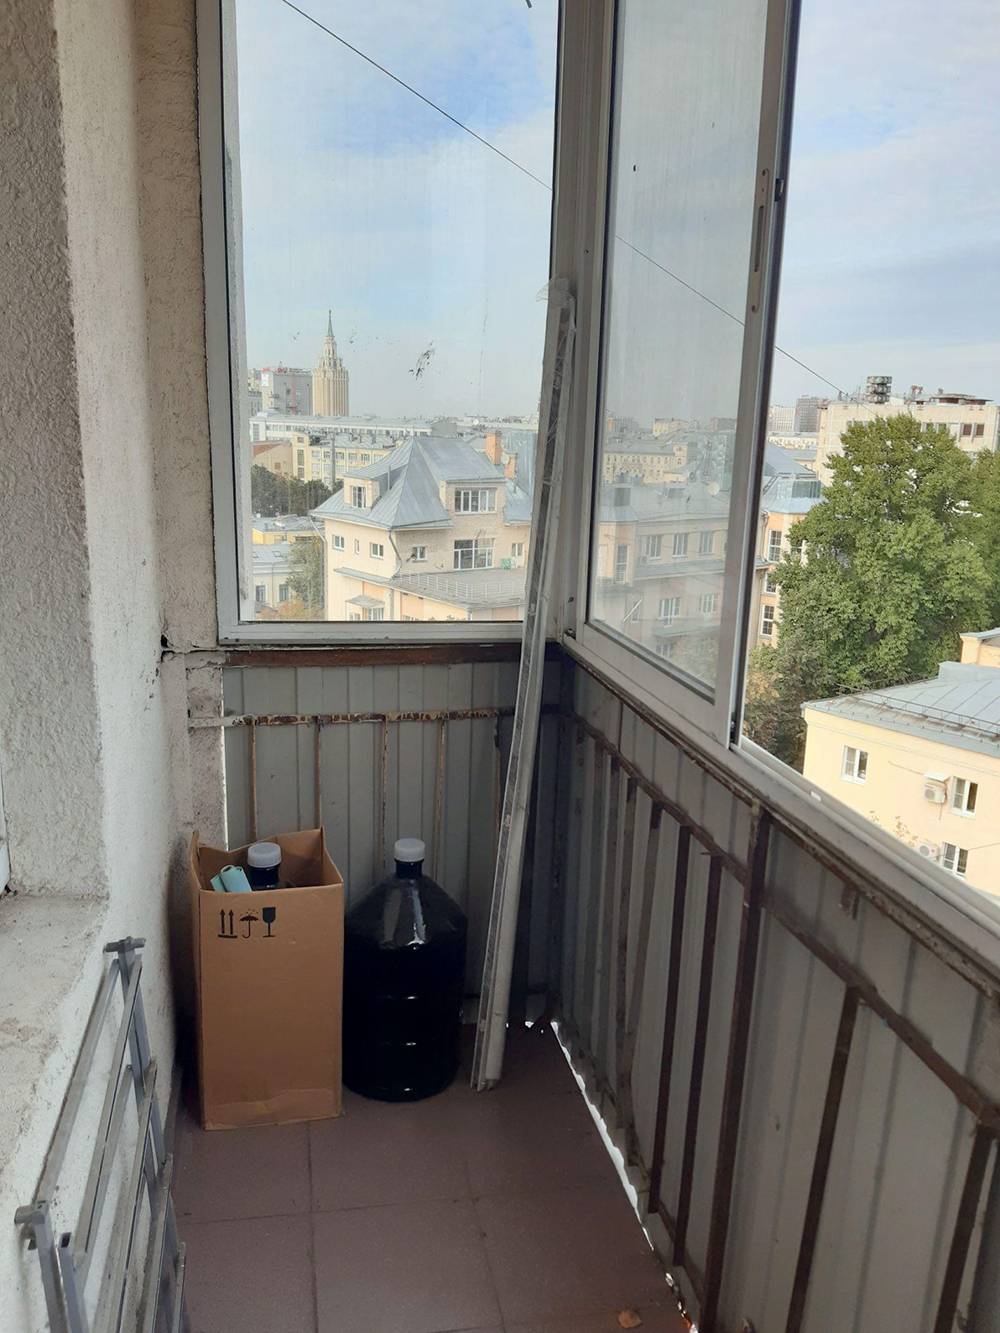 Балкон до хоумстейджинга. Старое ограждение и предметы непонятного назначения — балкон выглядит как склад ненужных вещей